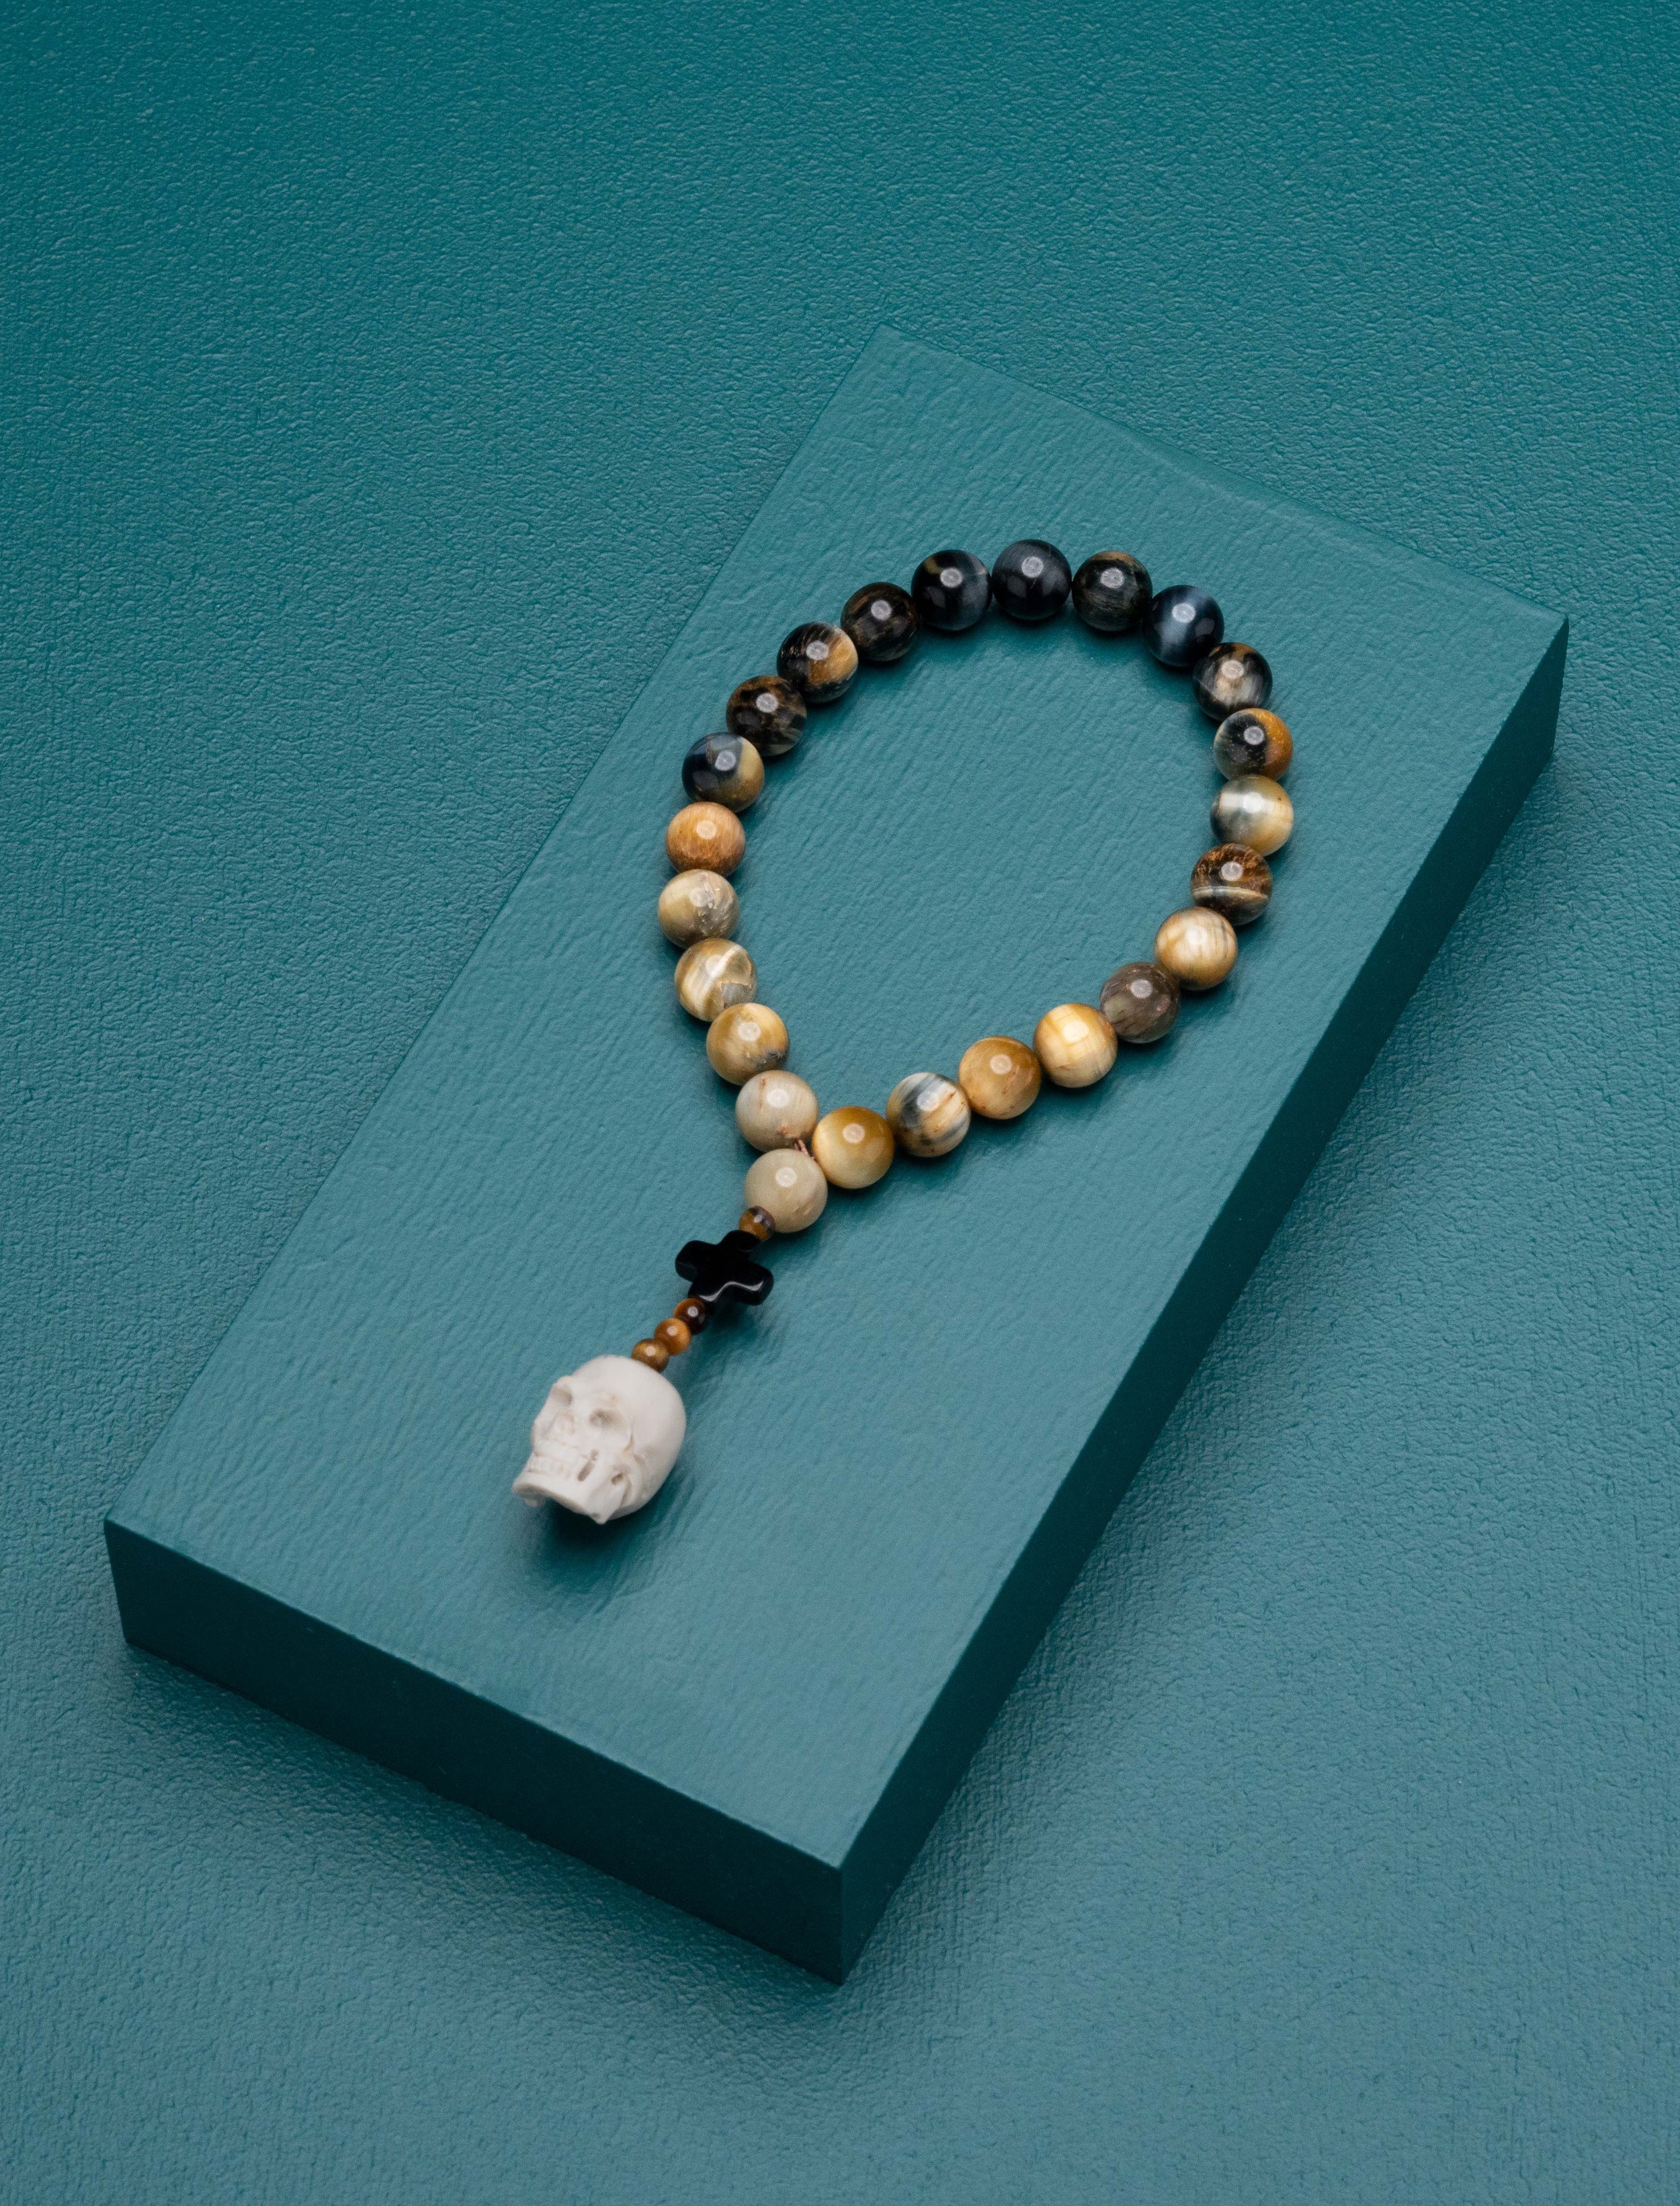 Worry Jock Caim - Worry by Beads — Caim Zonfrillo designed Beads